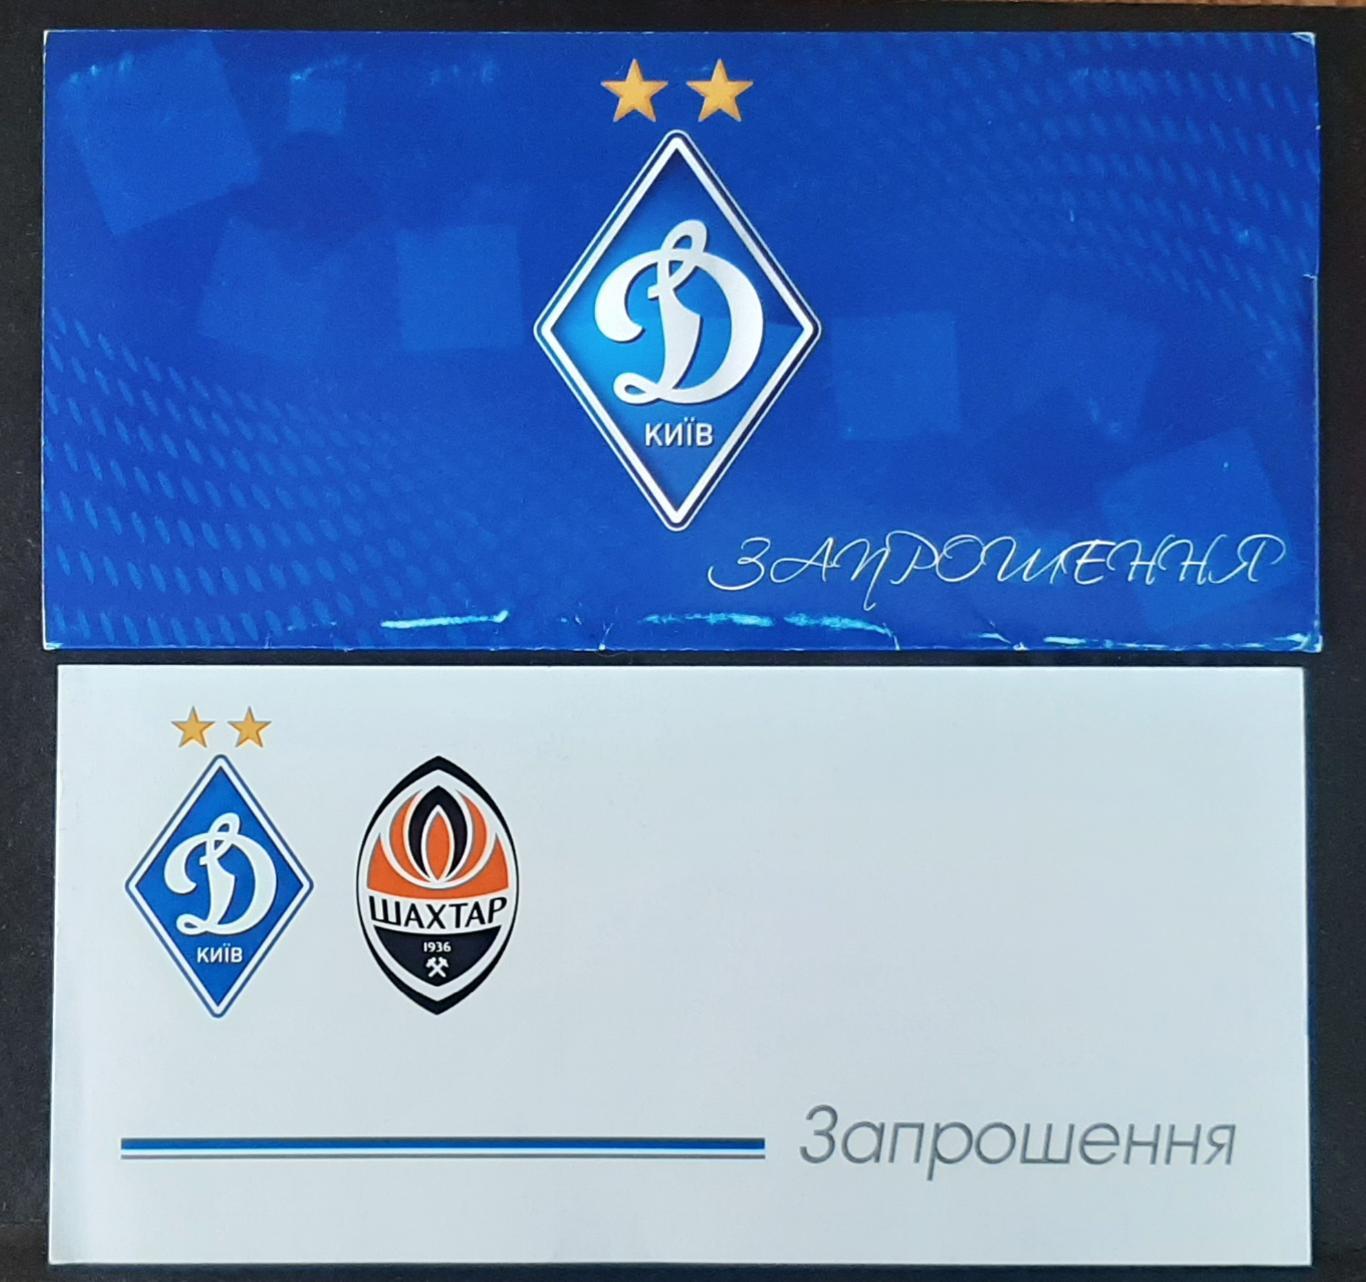 Запрошення Динамо Київ - Шахтар Донецьк 08.11.2020 2